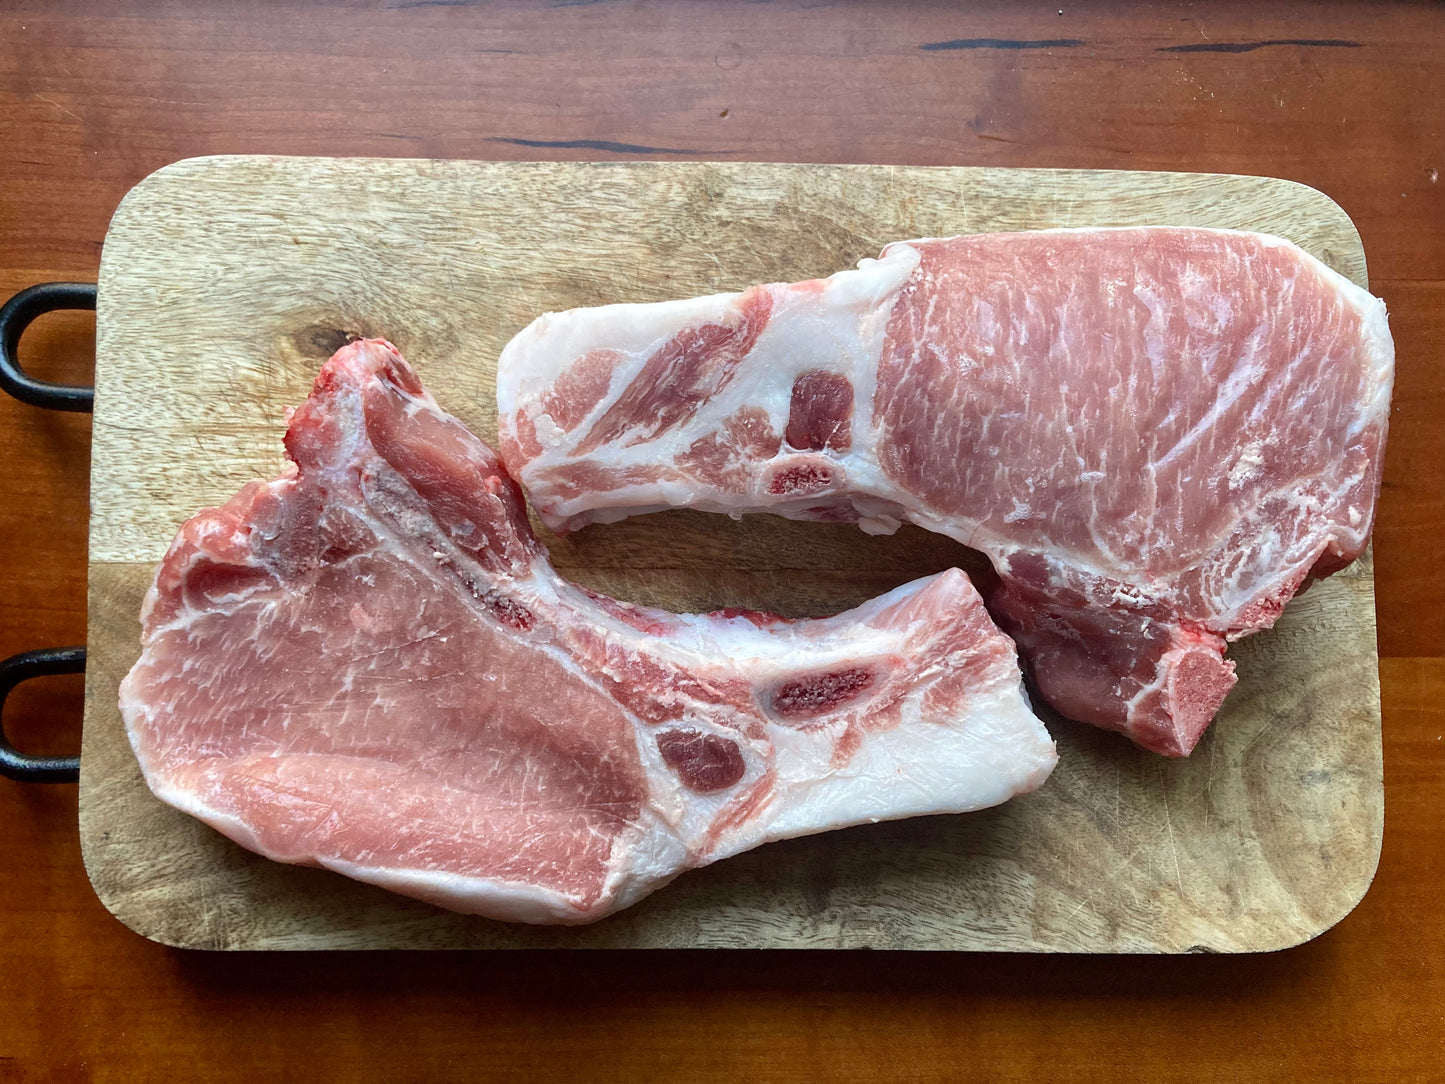 Pork chops - 1" cut, bone-in